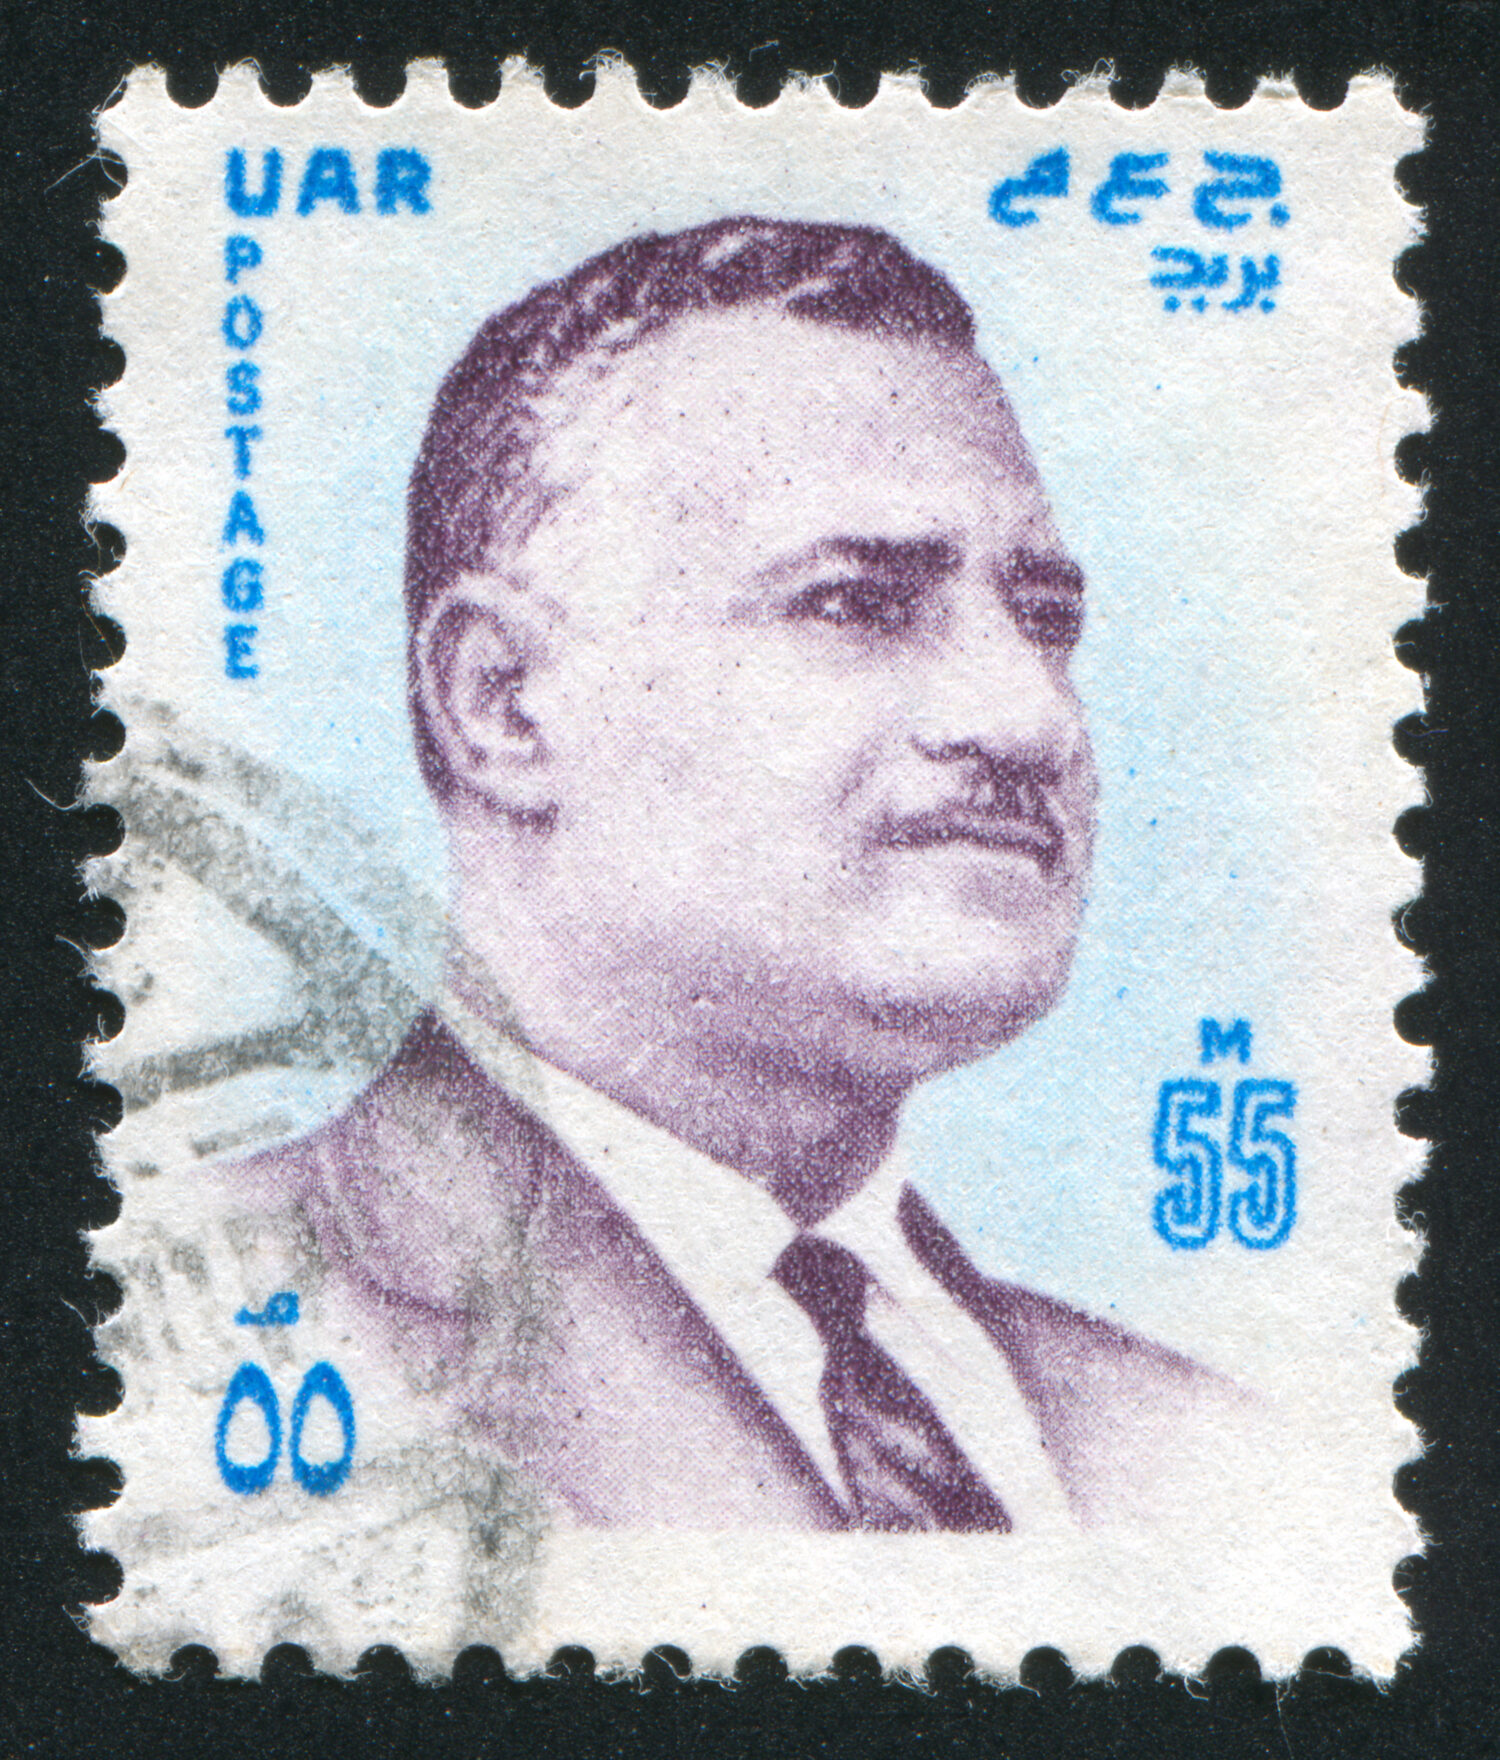 Gamal Abdel Nasser in Egypt